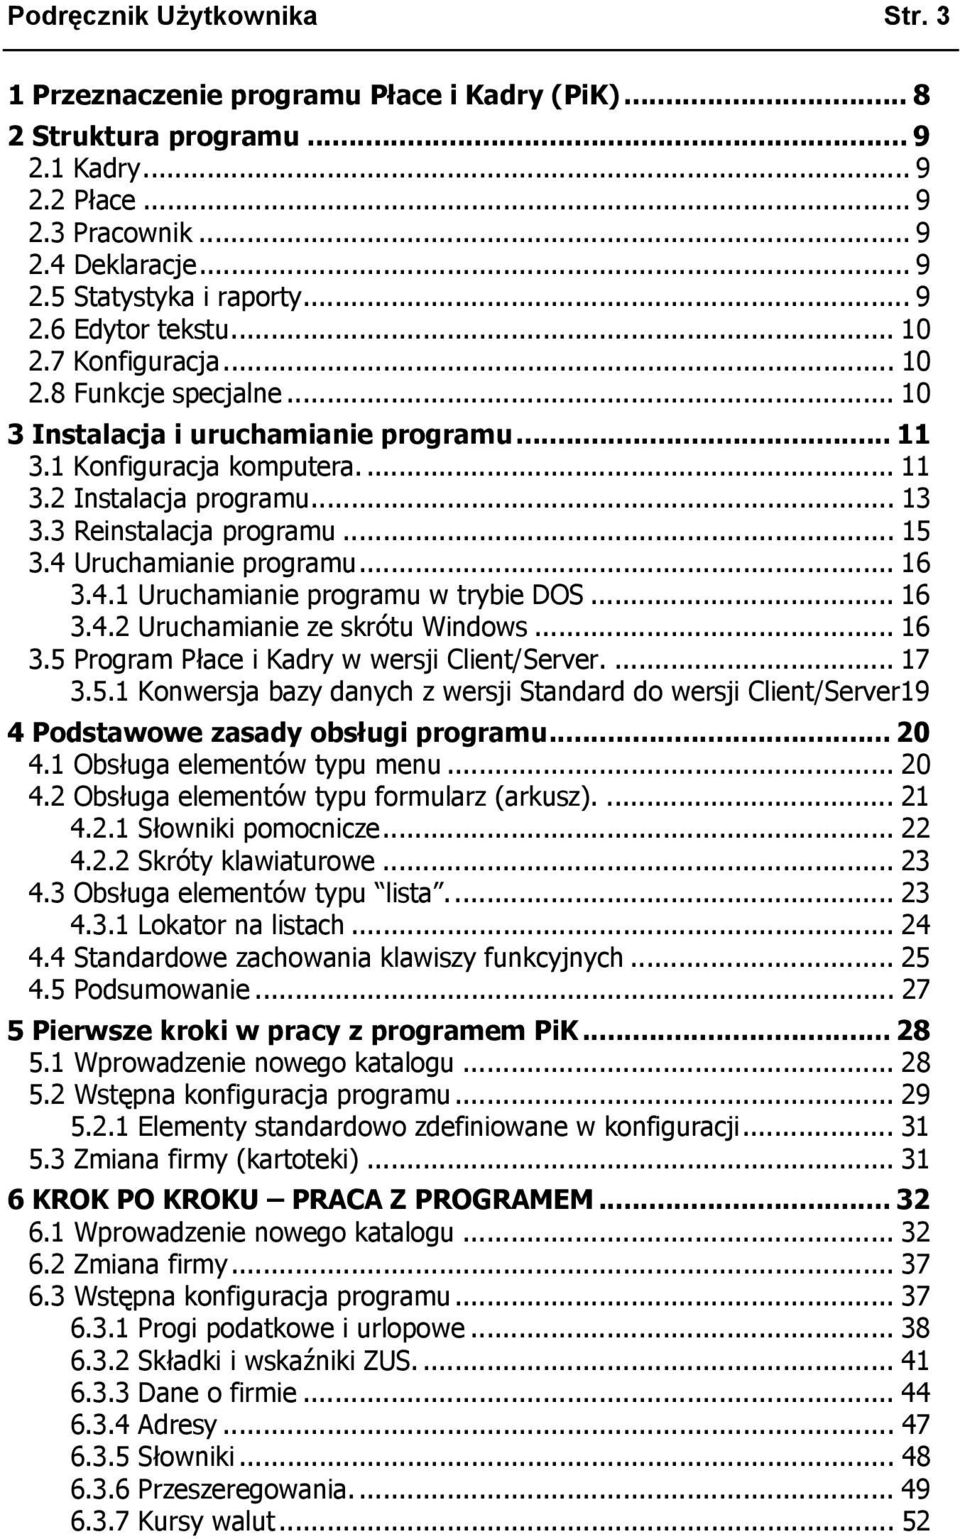 3 Reinstalacja programu... 15 3.4 Uruchamianie programu... 16 3.4.1 Uruchamianie programu w trybie DOS... 16 3.4.2 Uruchamianie ze skrótu Windows... 16 3.5 Program Płace i Kadry w wersji Client/Server.